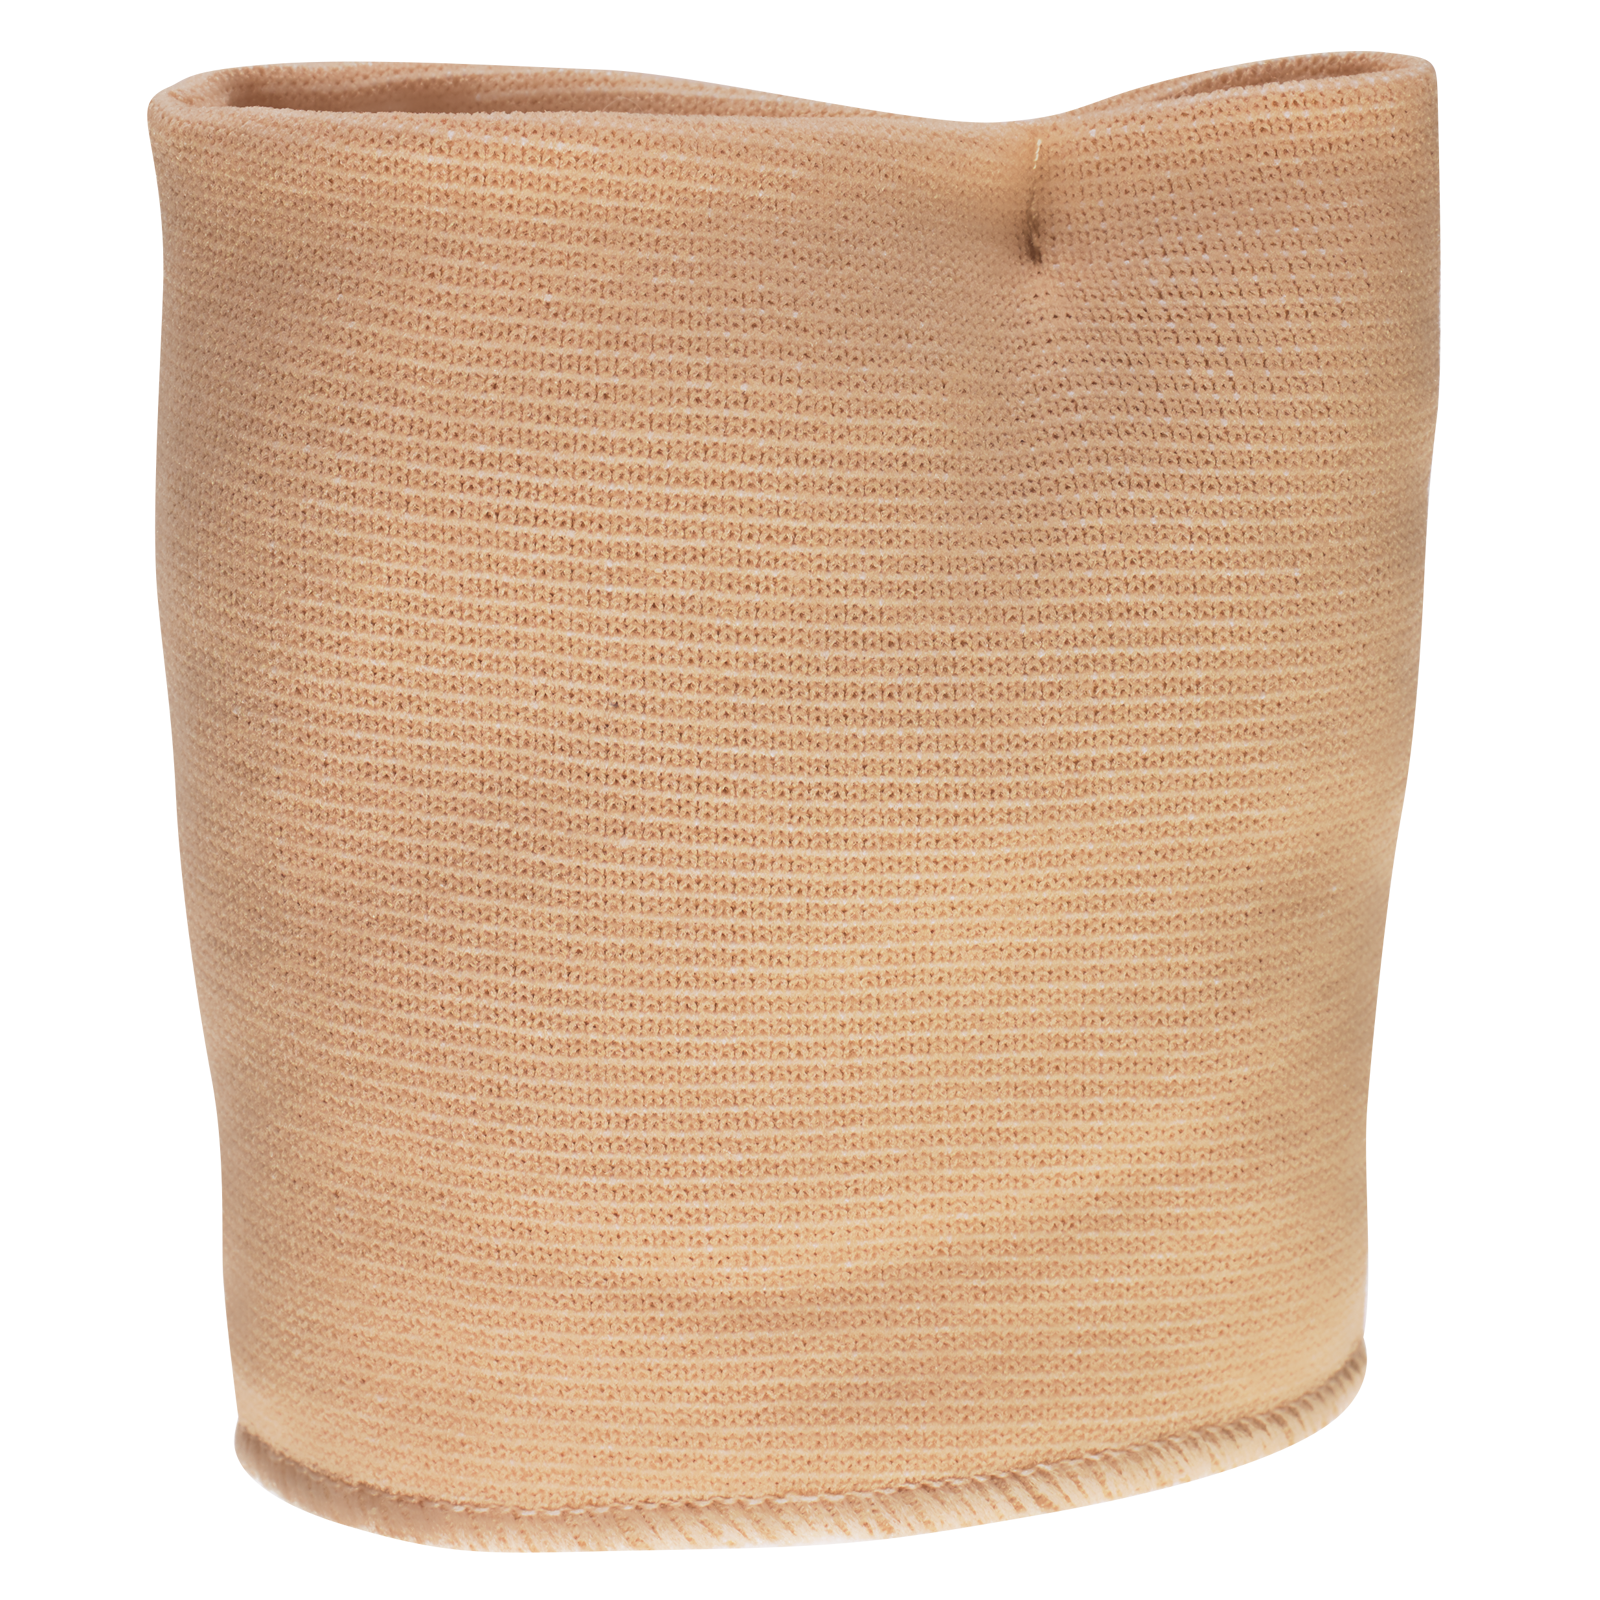 GEHWOL Vorfusspolster mit Bandage rechts, gross, 1 Stück